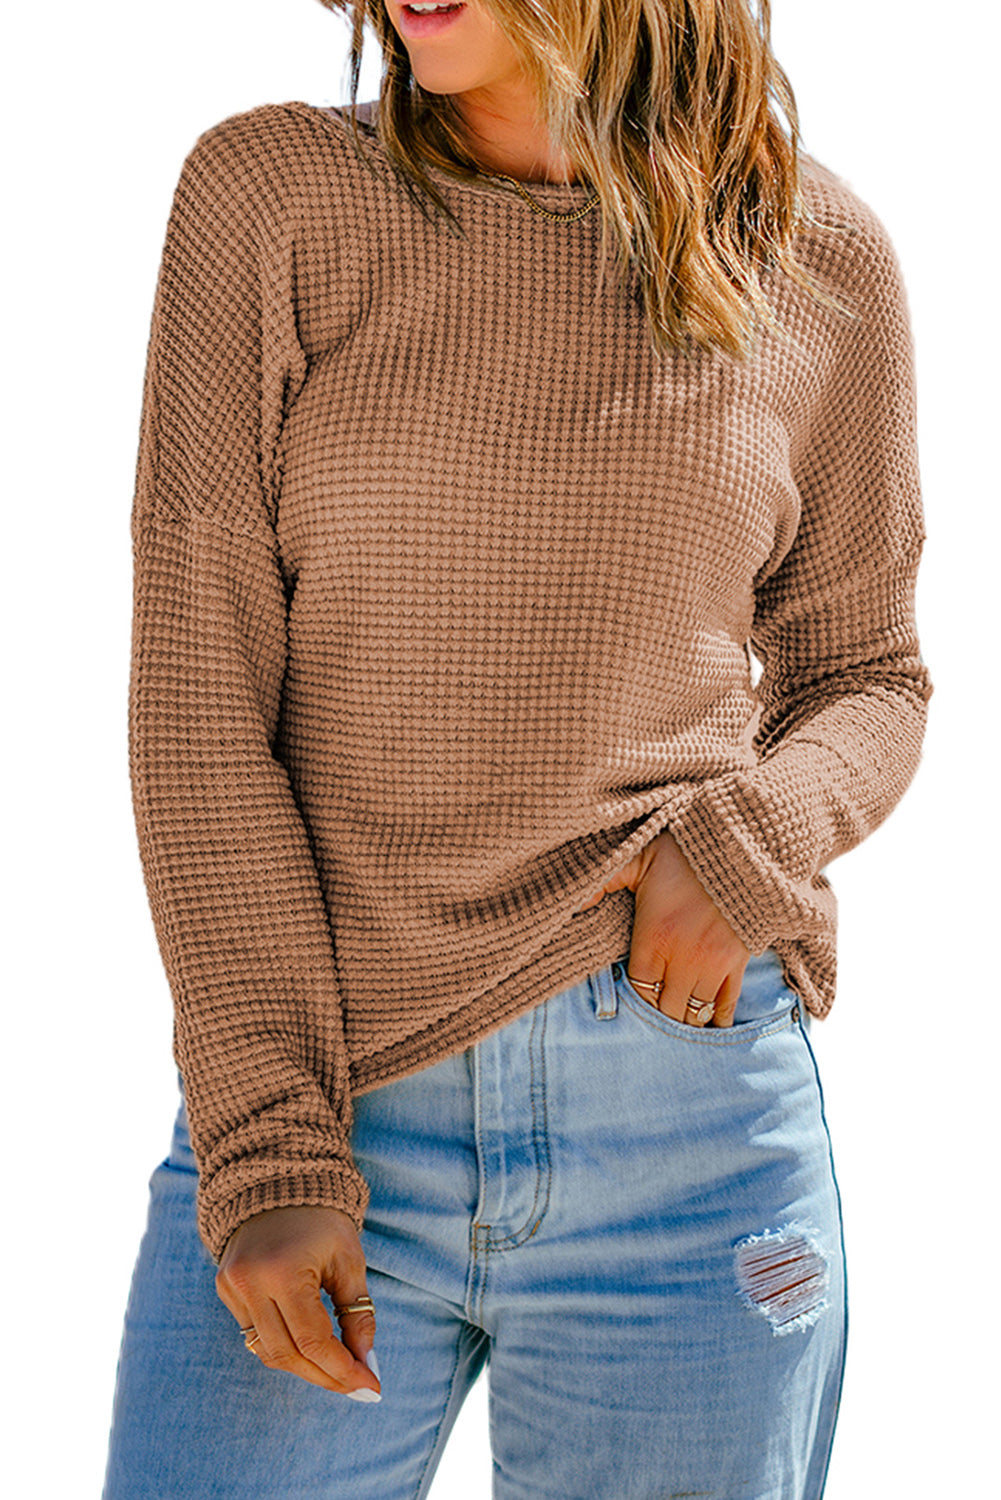 Tamno smeđa pletena majica s dugim rukavima spuštenih ramena